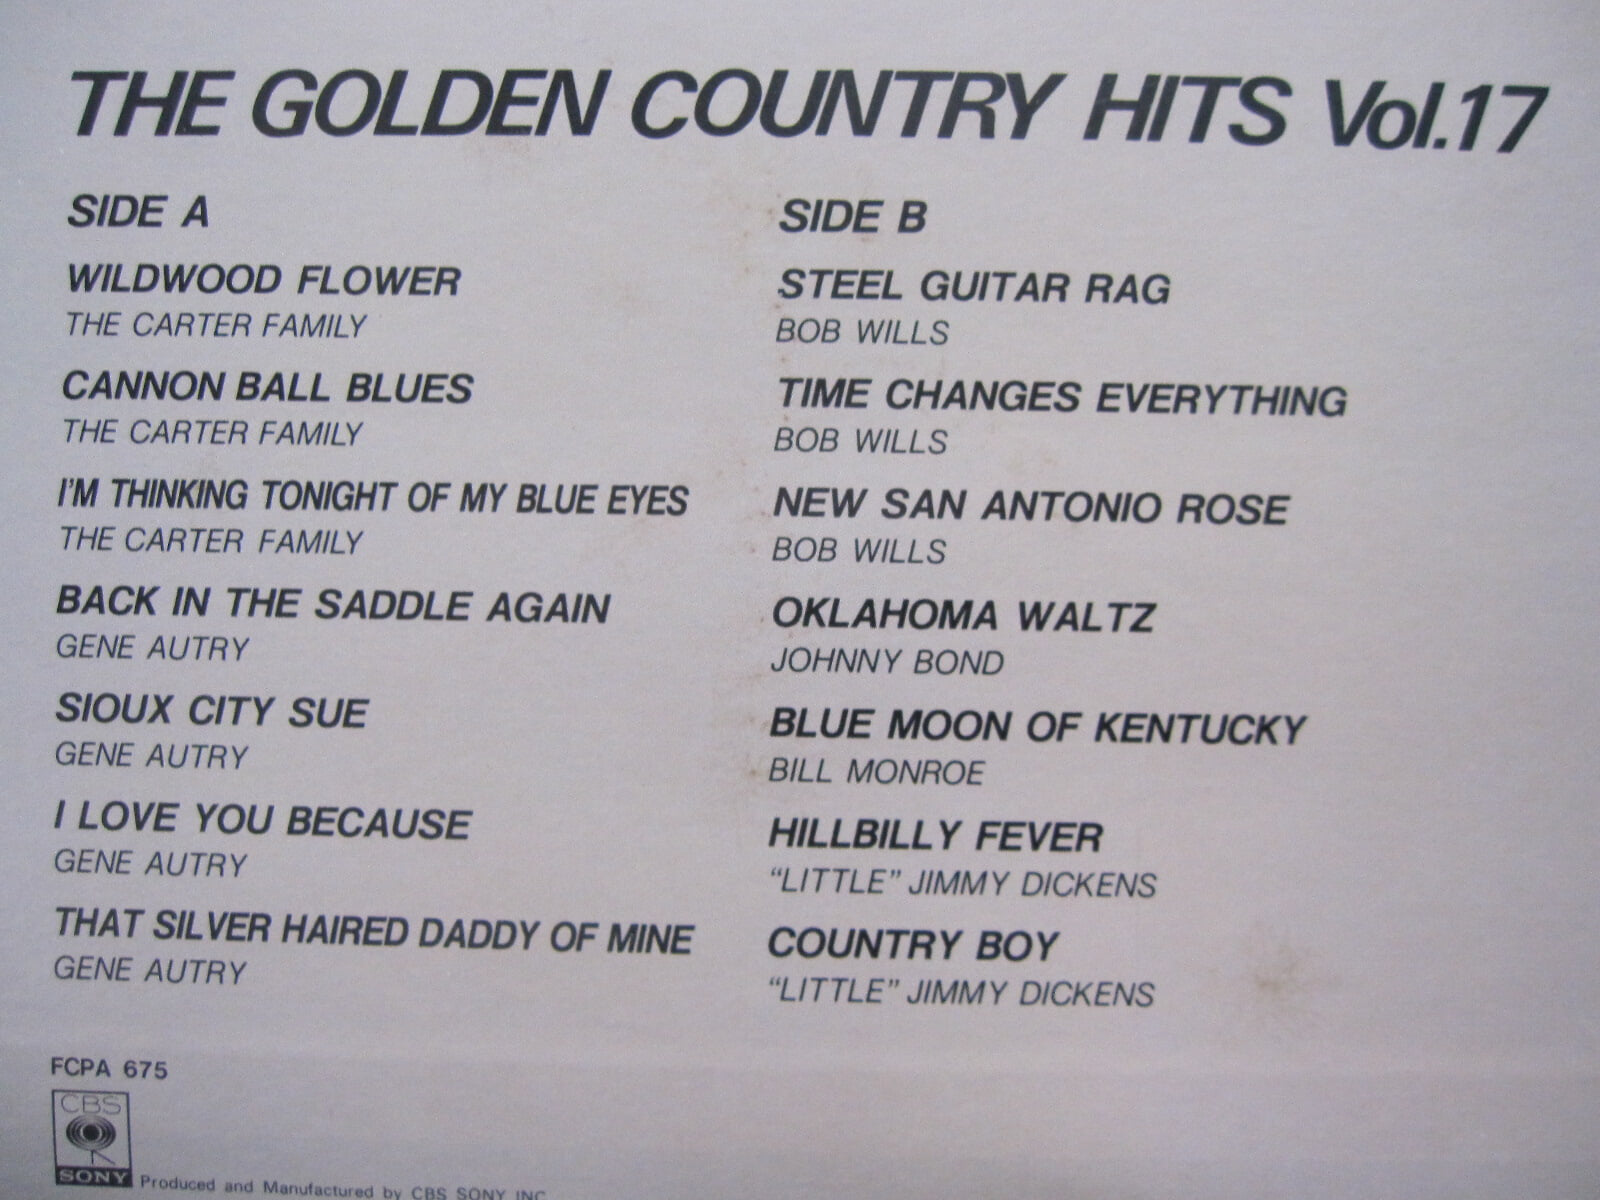 LP(수입) The Golden Country Hits Vol.17 - 카터 훼밀리/진 오트리/밥 윌스 외